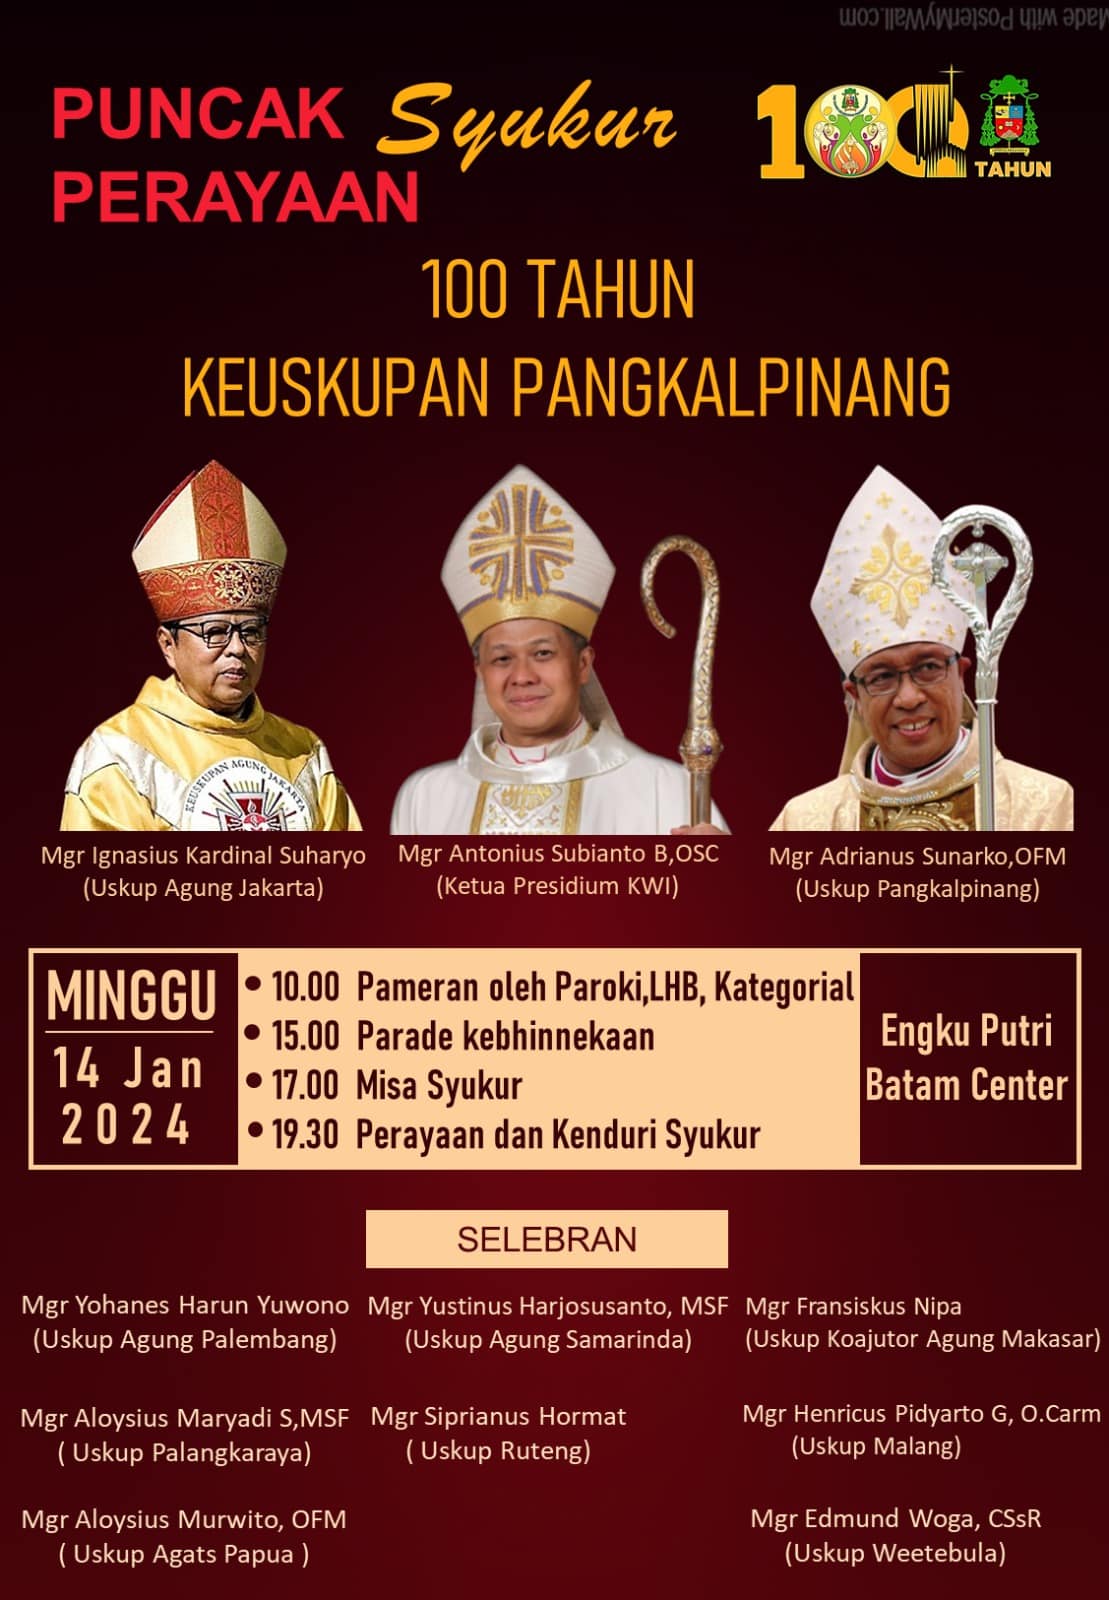 Puncak Perayaan Syukur 100 Tahun Keuskupan Pangkalpinang 14 Januari 2024